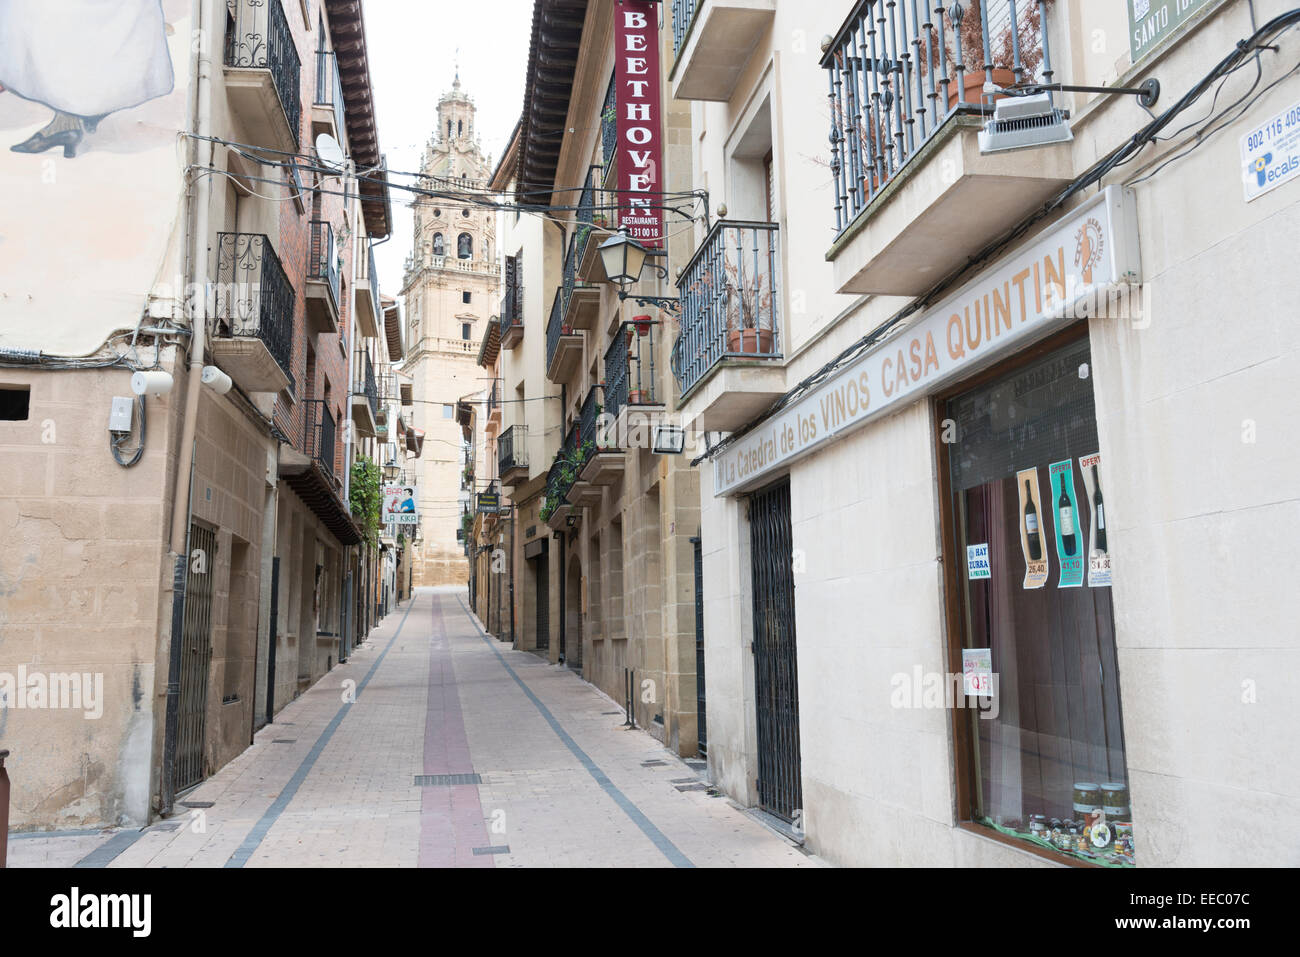 Una strada stretta e edifici della città di Haro, Spagna, la capitale del vino Rioja regione. Foto Stock